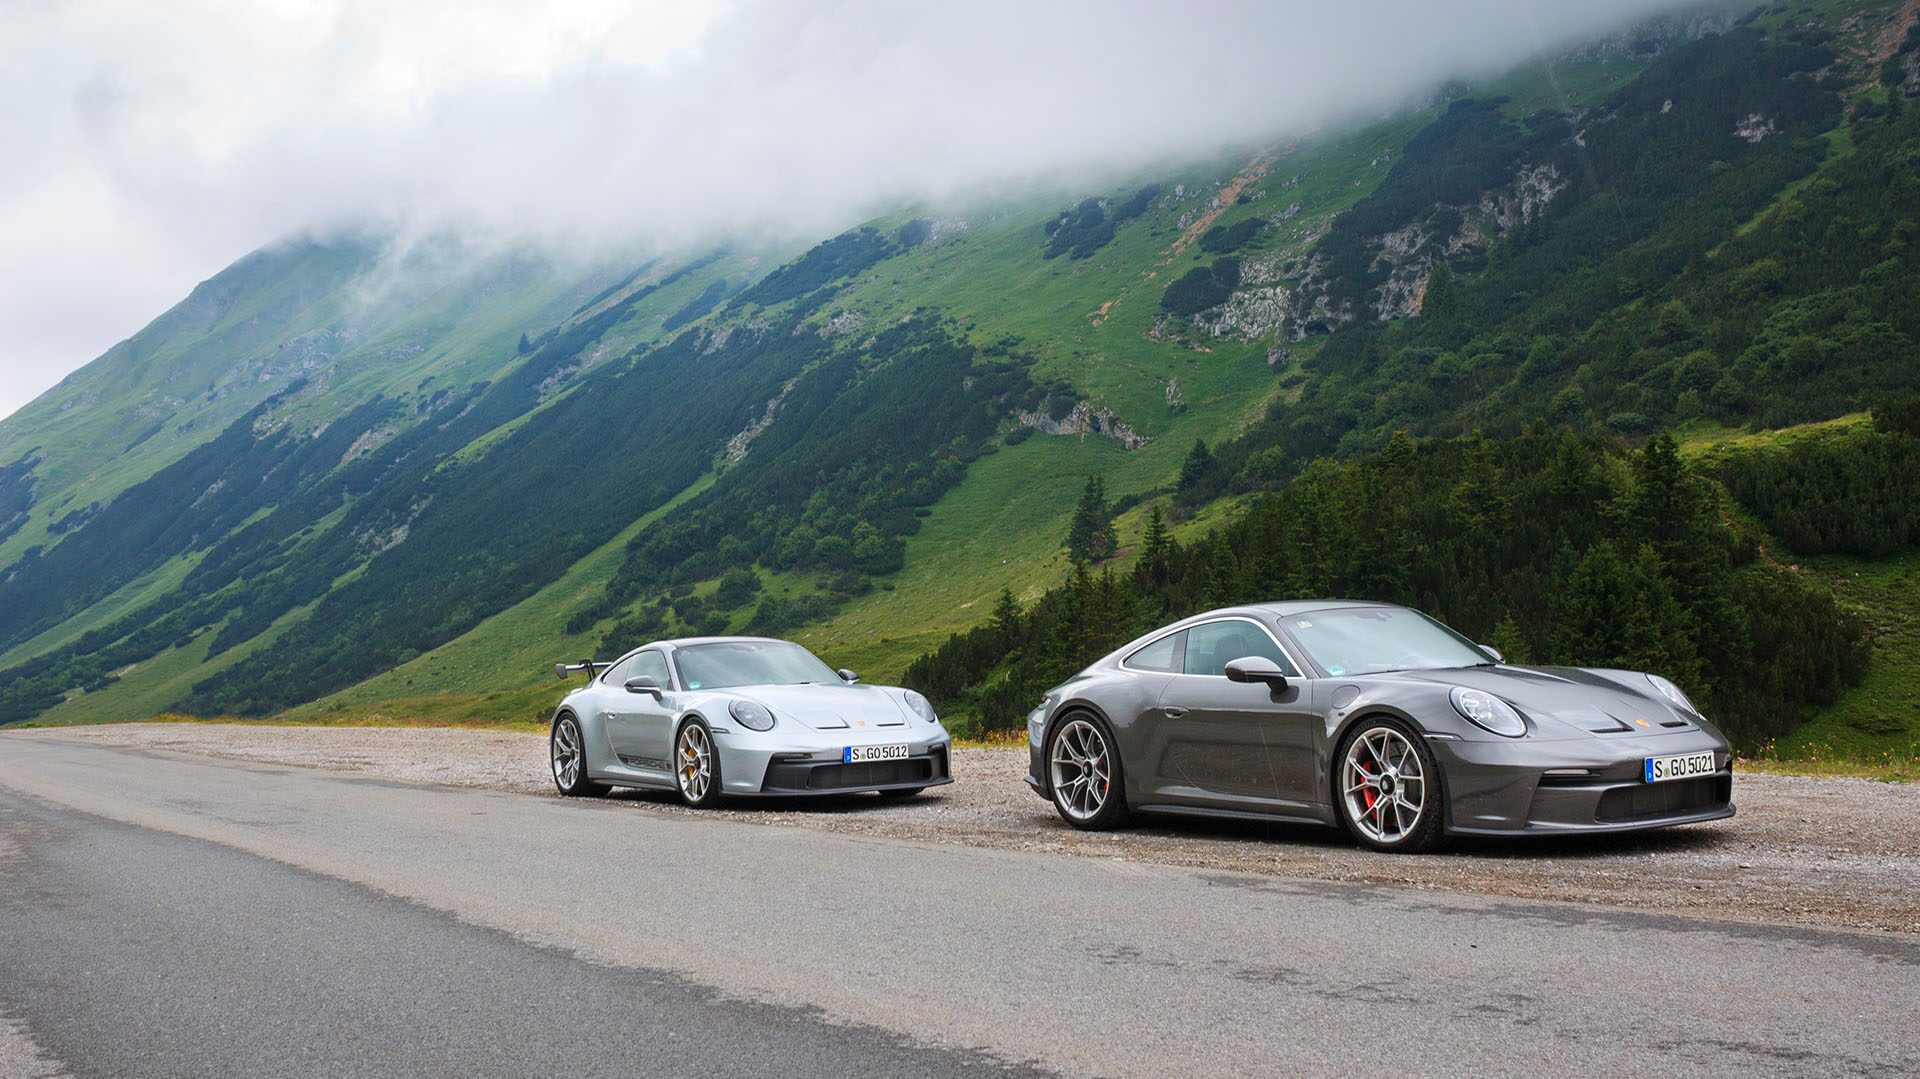 Porsche GT3s on mountain pass road